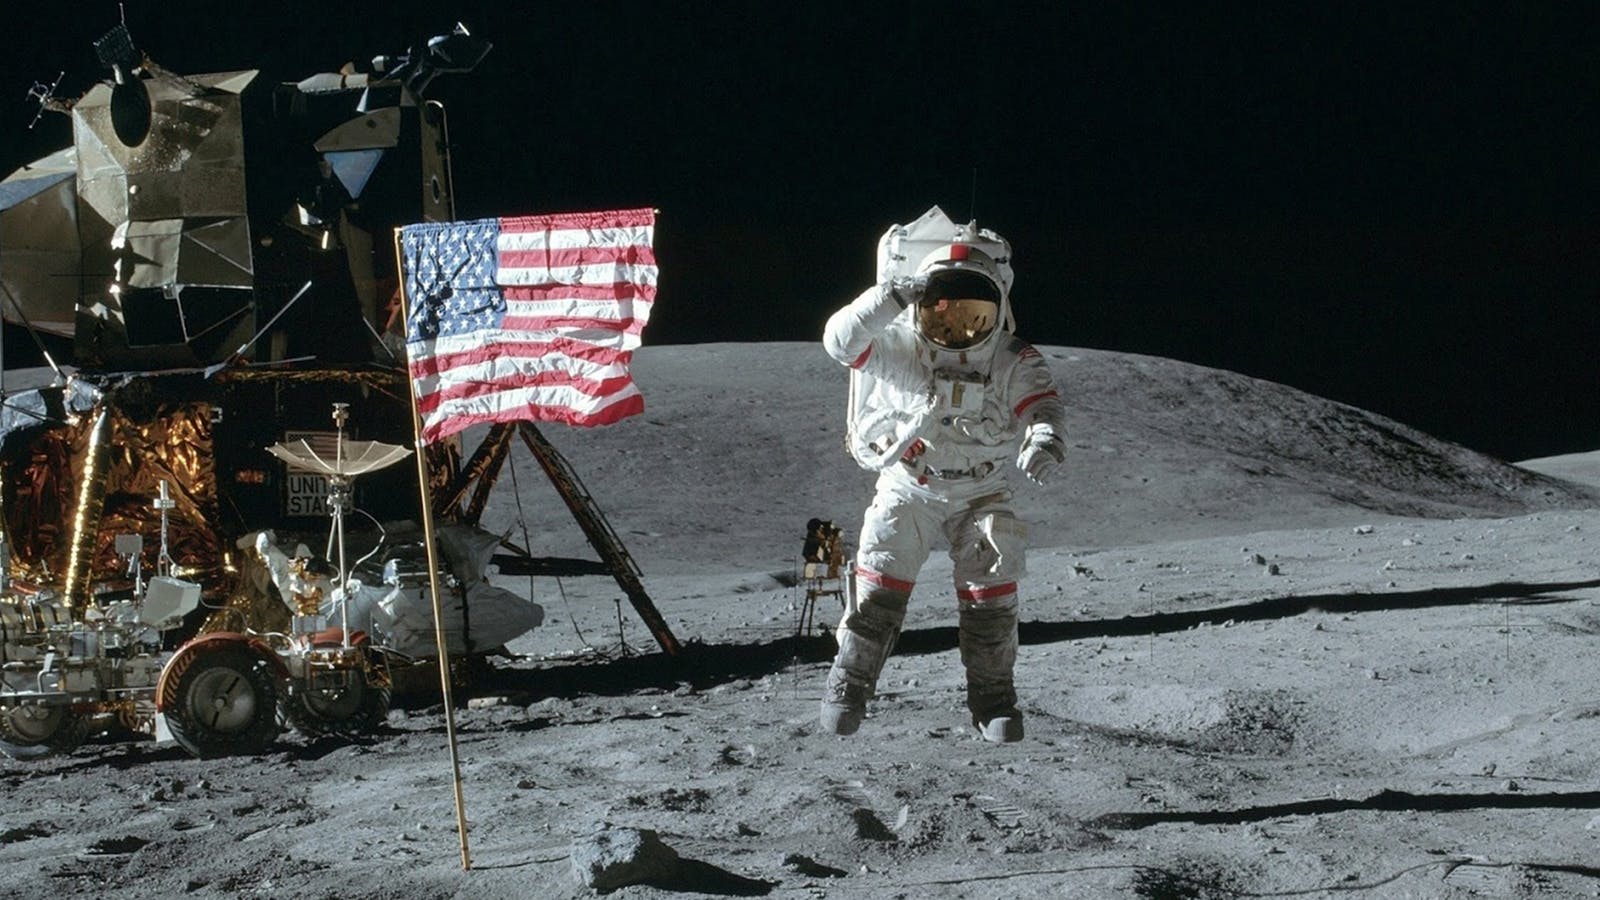 阿姆斯特朗是第一个踏上月球土壤的地球人类,他在踏上月球表面时,说出